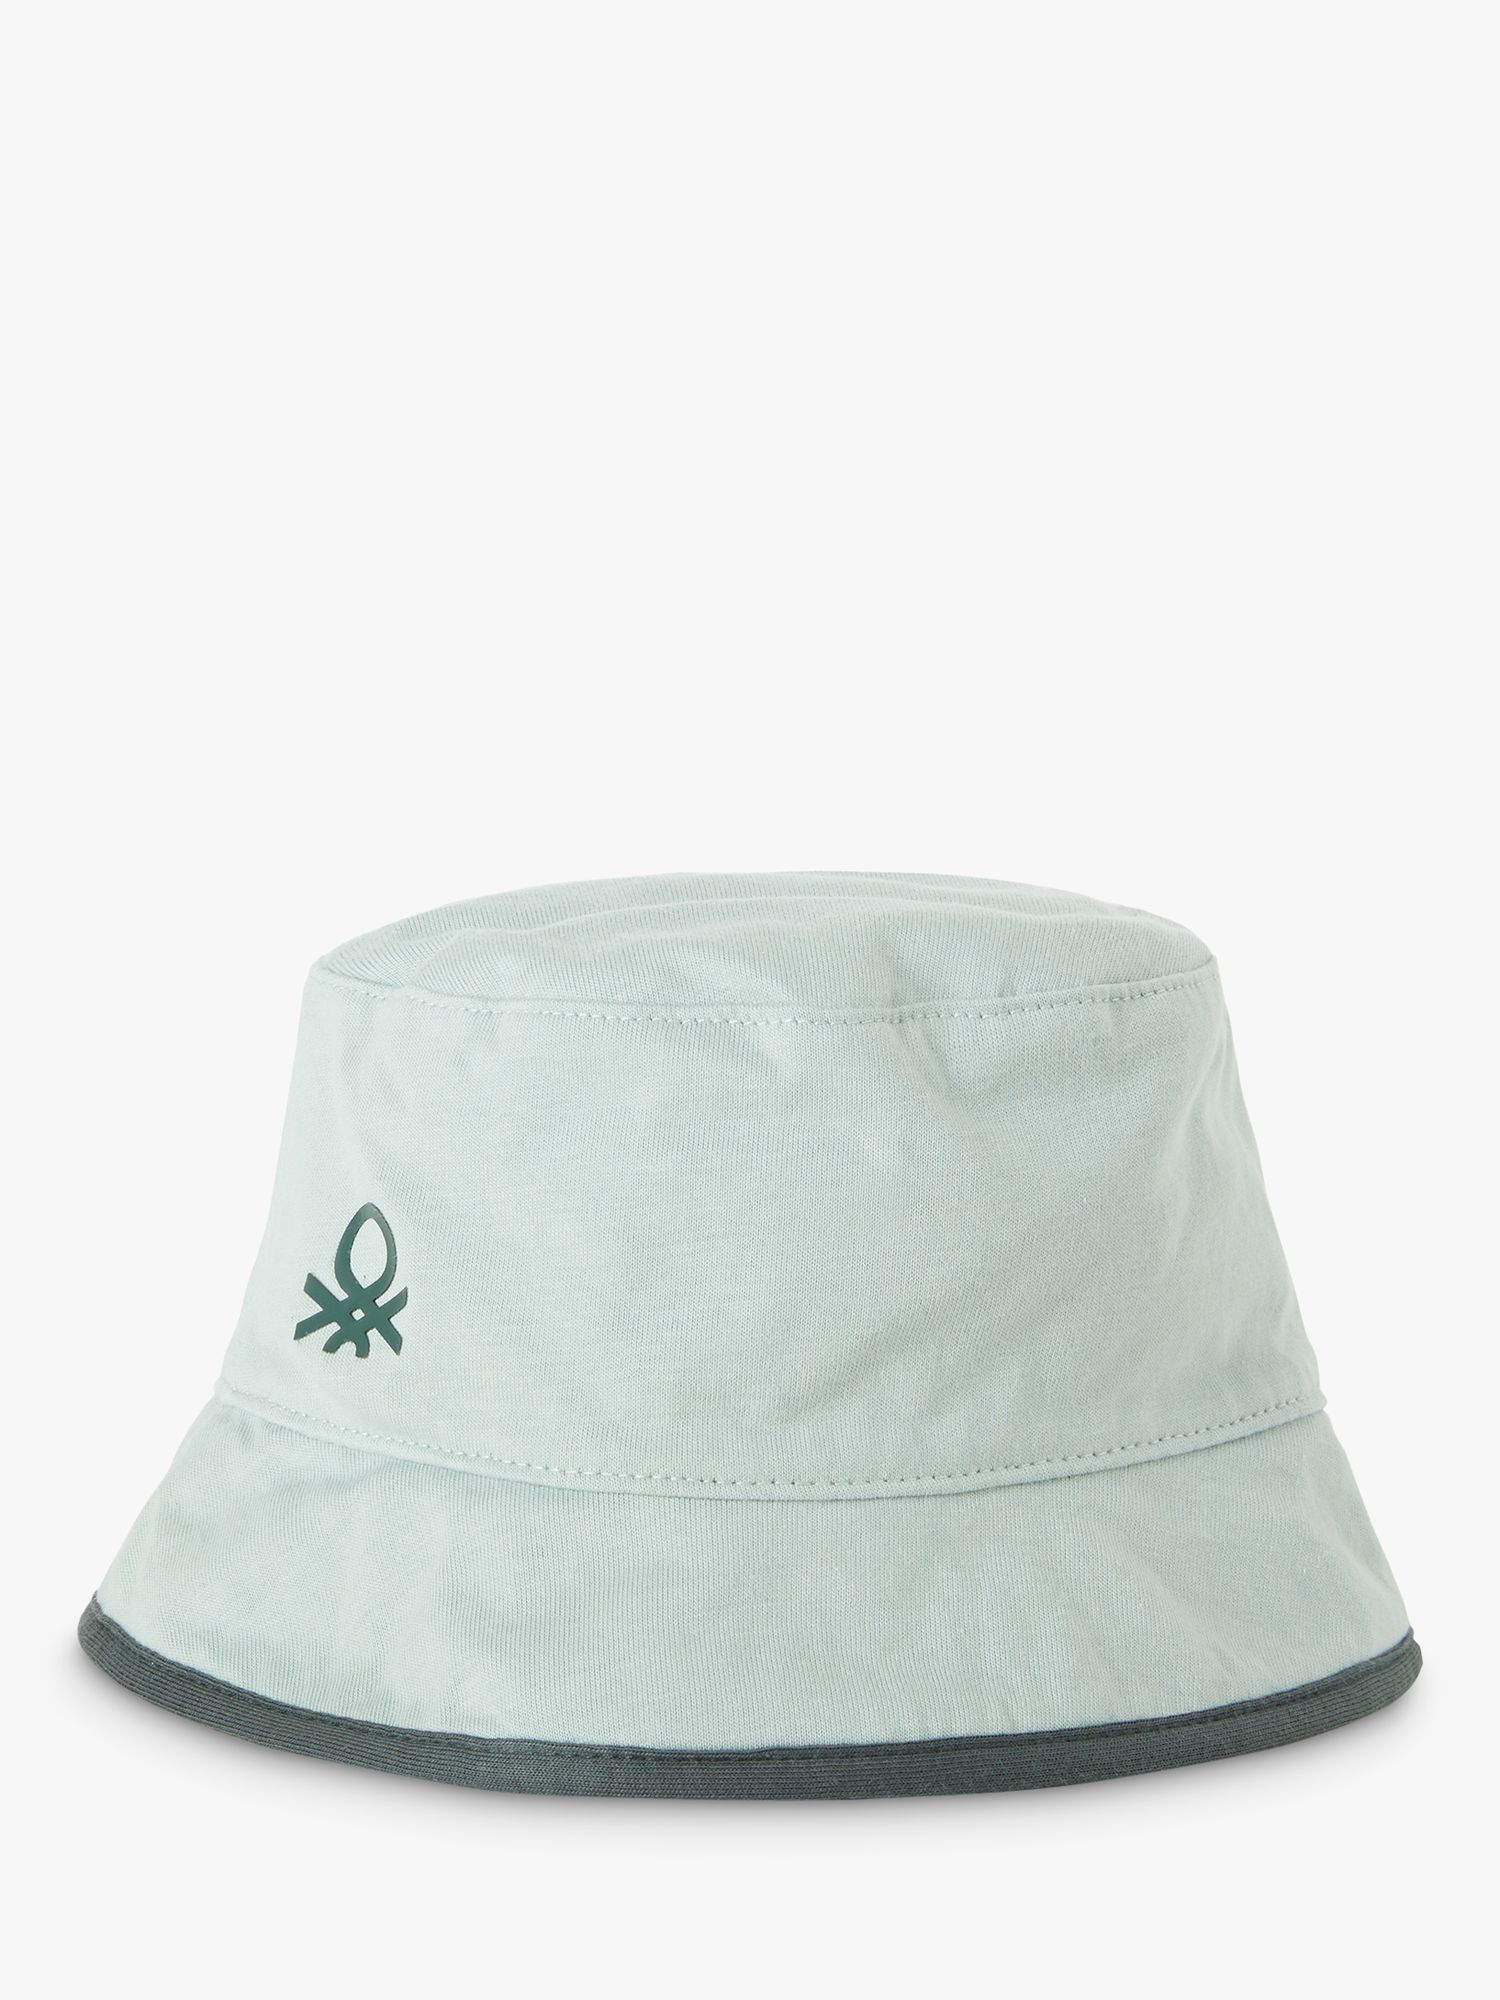 Benetton Kids' Logo/Pattern Reversible Bucket Hat, Green/Multi, XXS